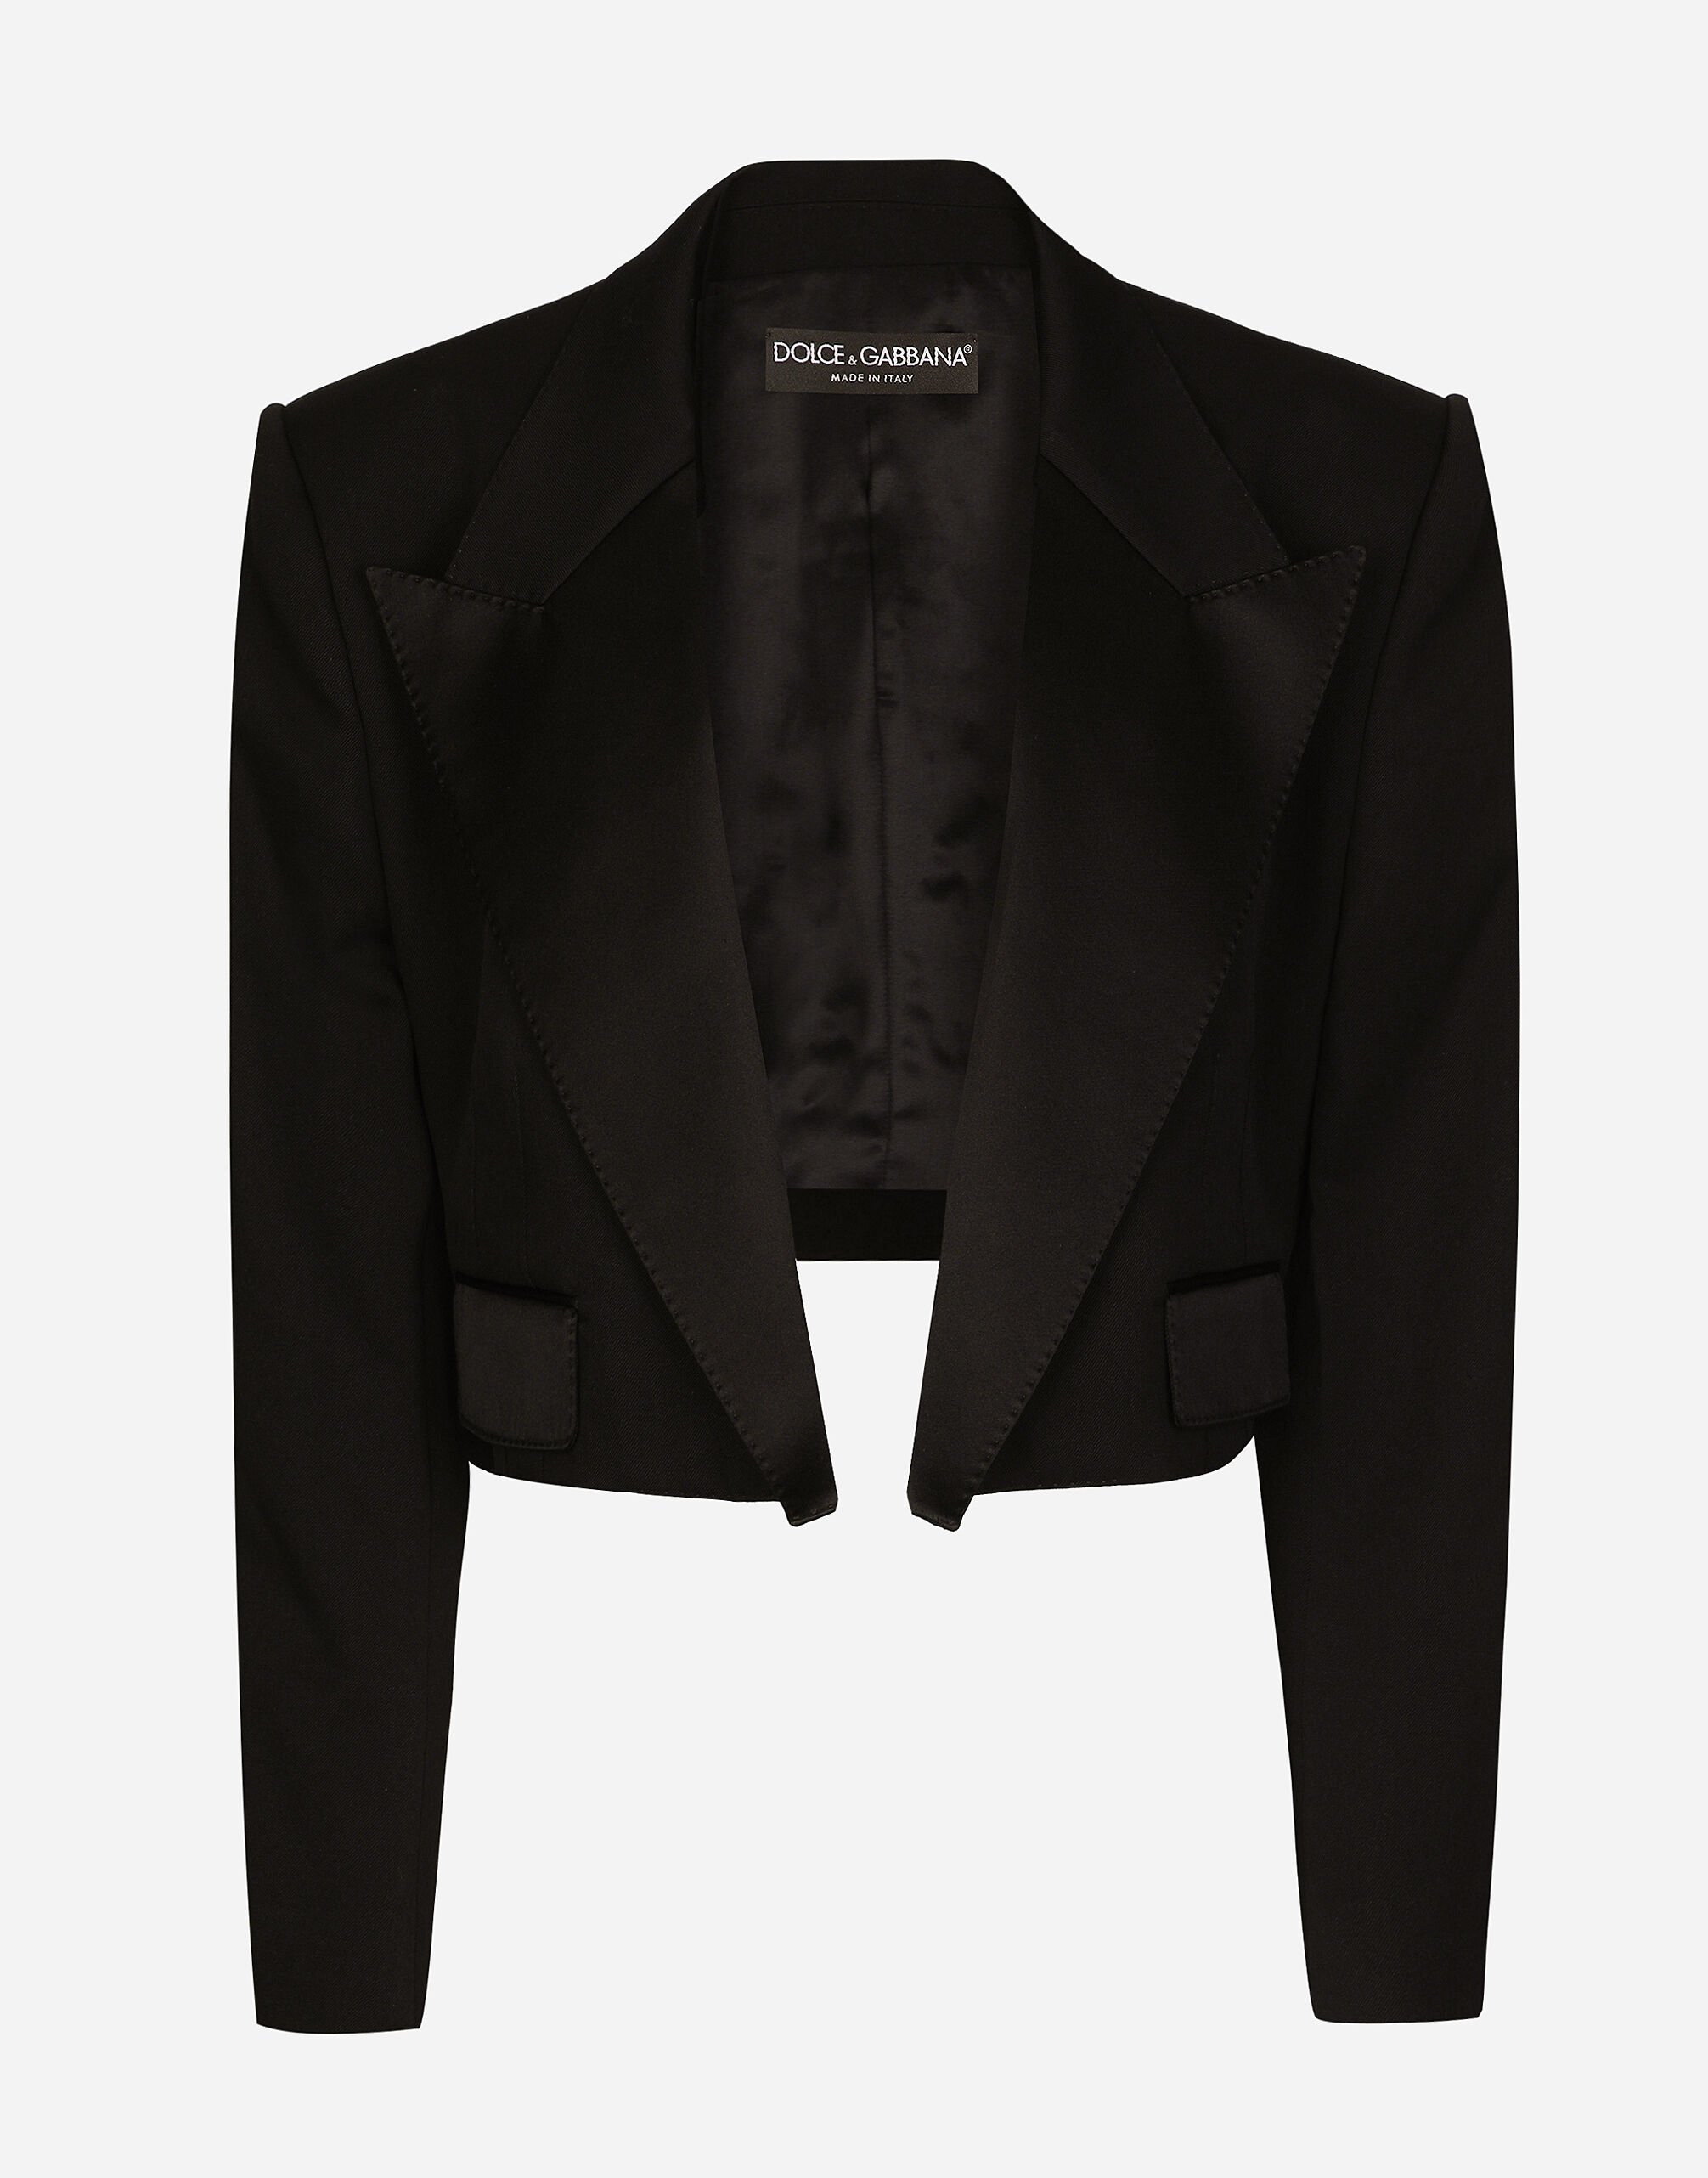 Dolce & Gabbana Wool gabardine Spencer tuxedo jacket Black F6AUXTFUUBD